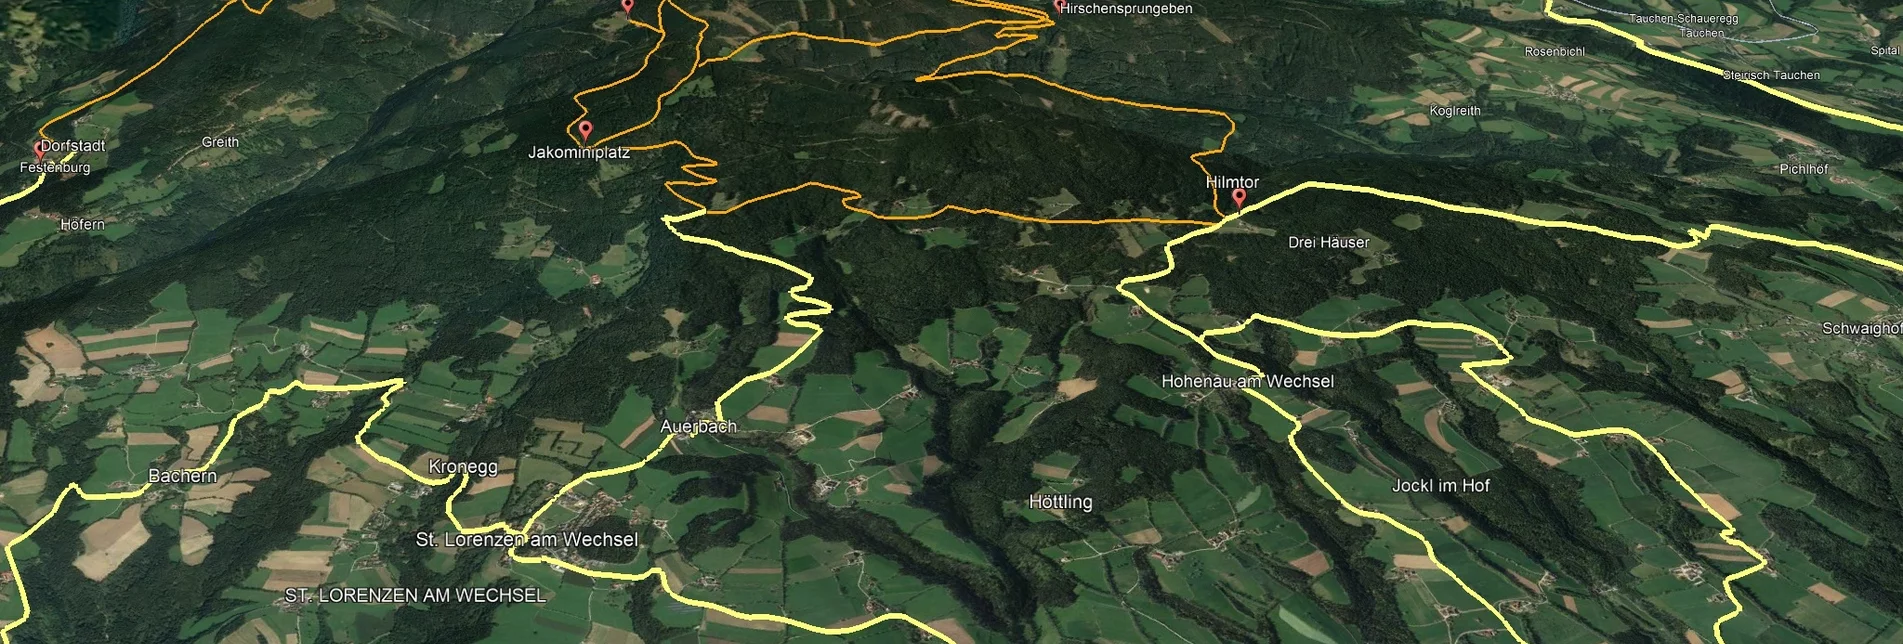 Mountain Biking PREVIEW Styrian Wexl Trails - Windhang Route - Touren-Impression #1 | © Verein Tourismusentwicklung Steirischer Wechsel